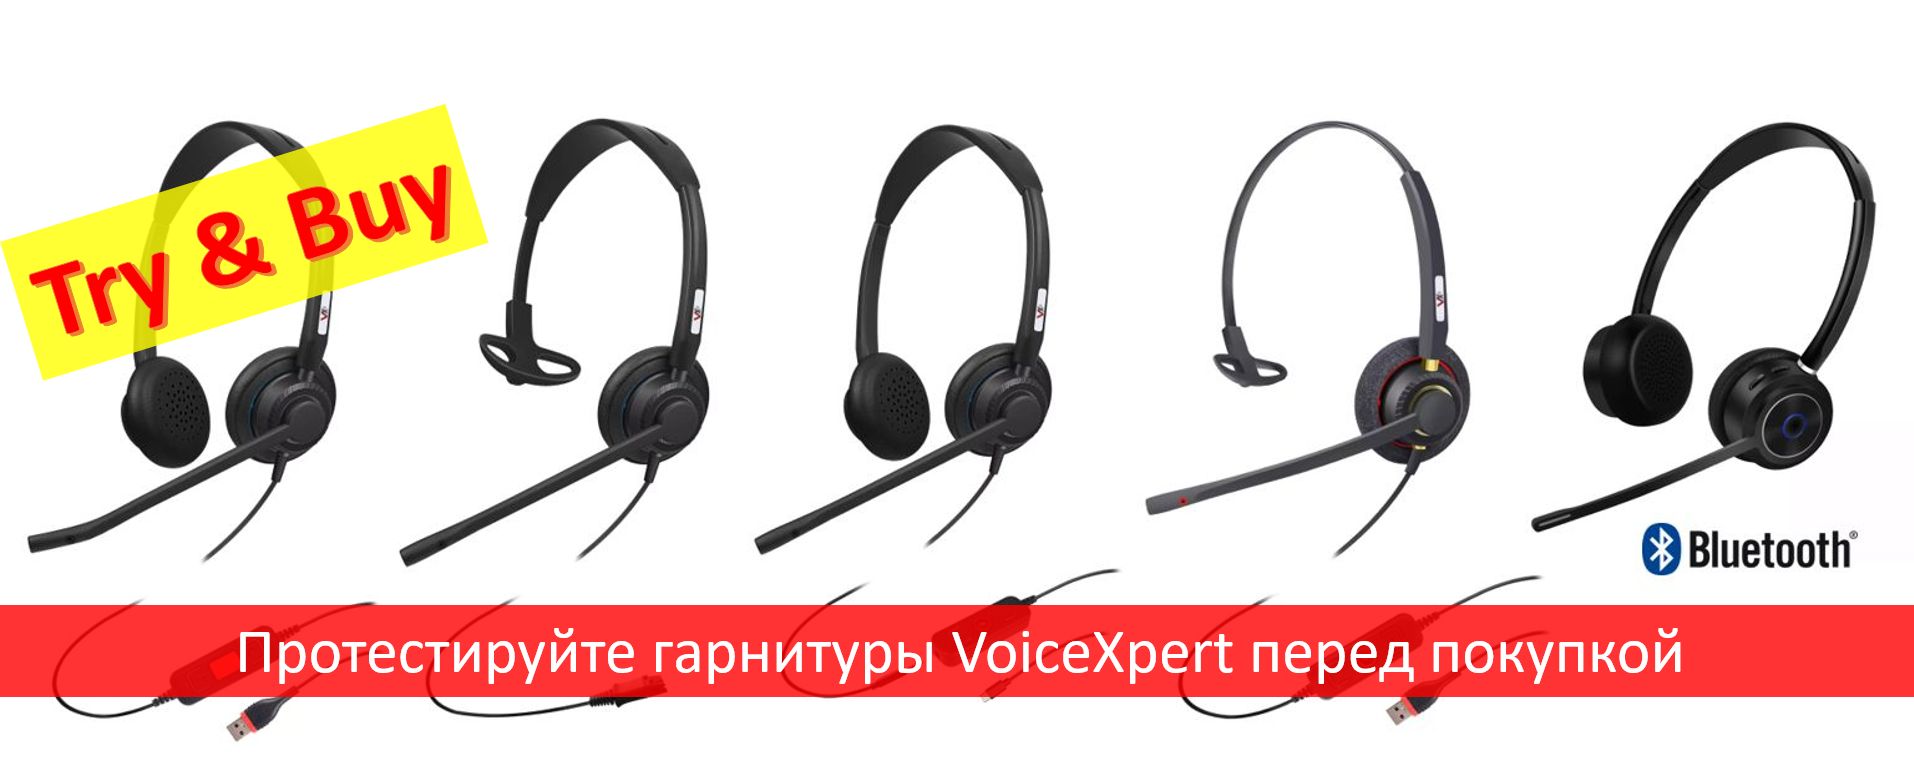 Чем интересен новый бренд телефонных гарнитур VoiceXpert?